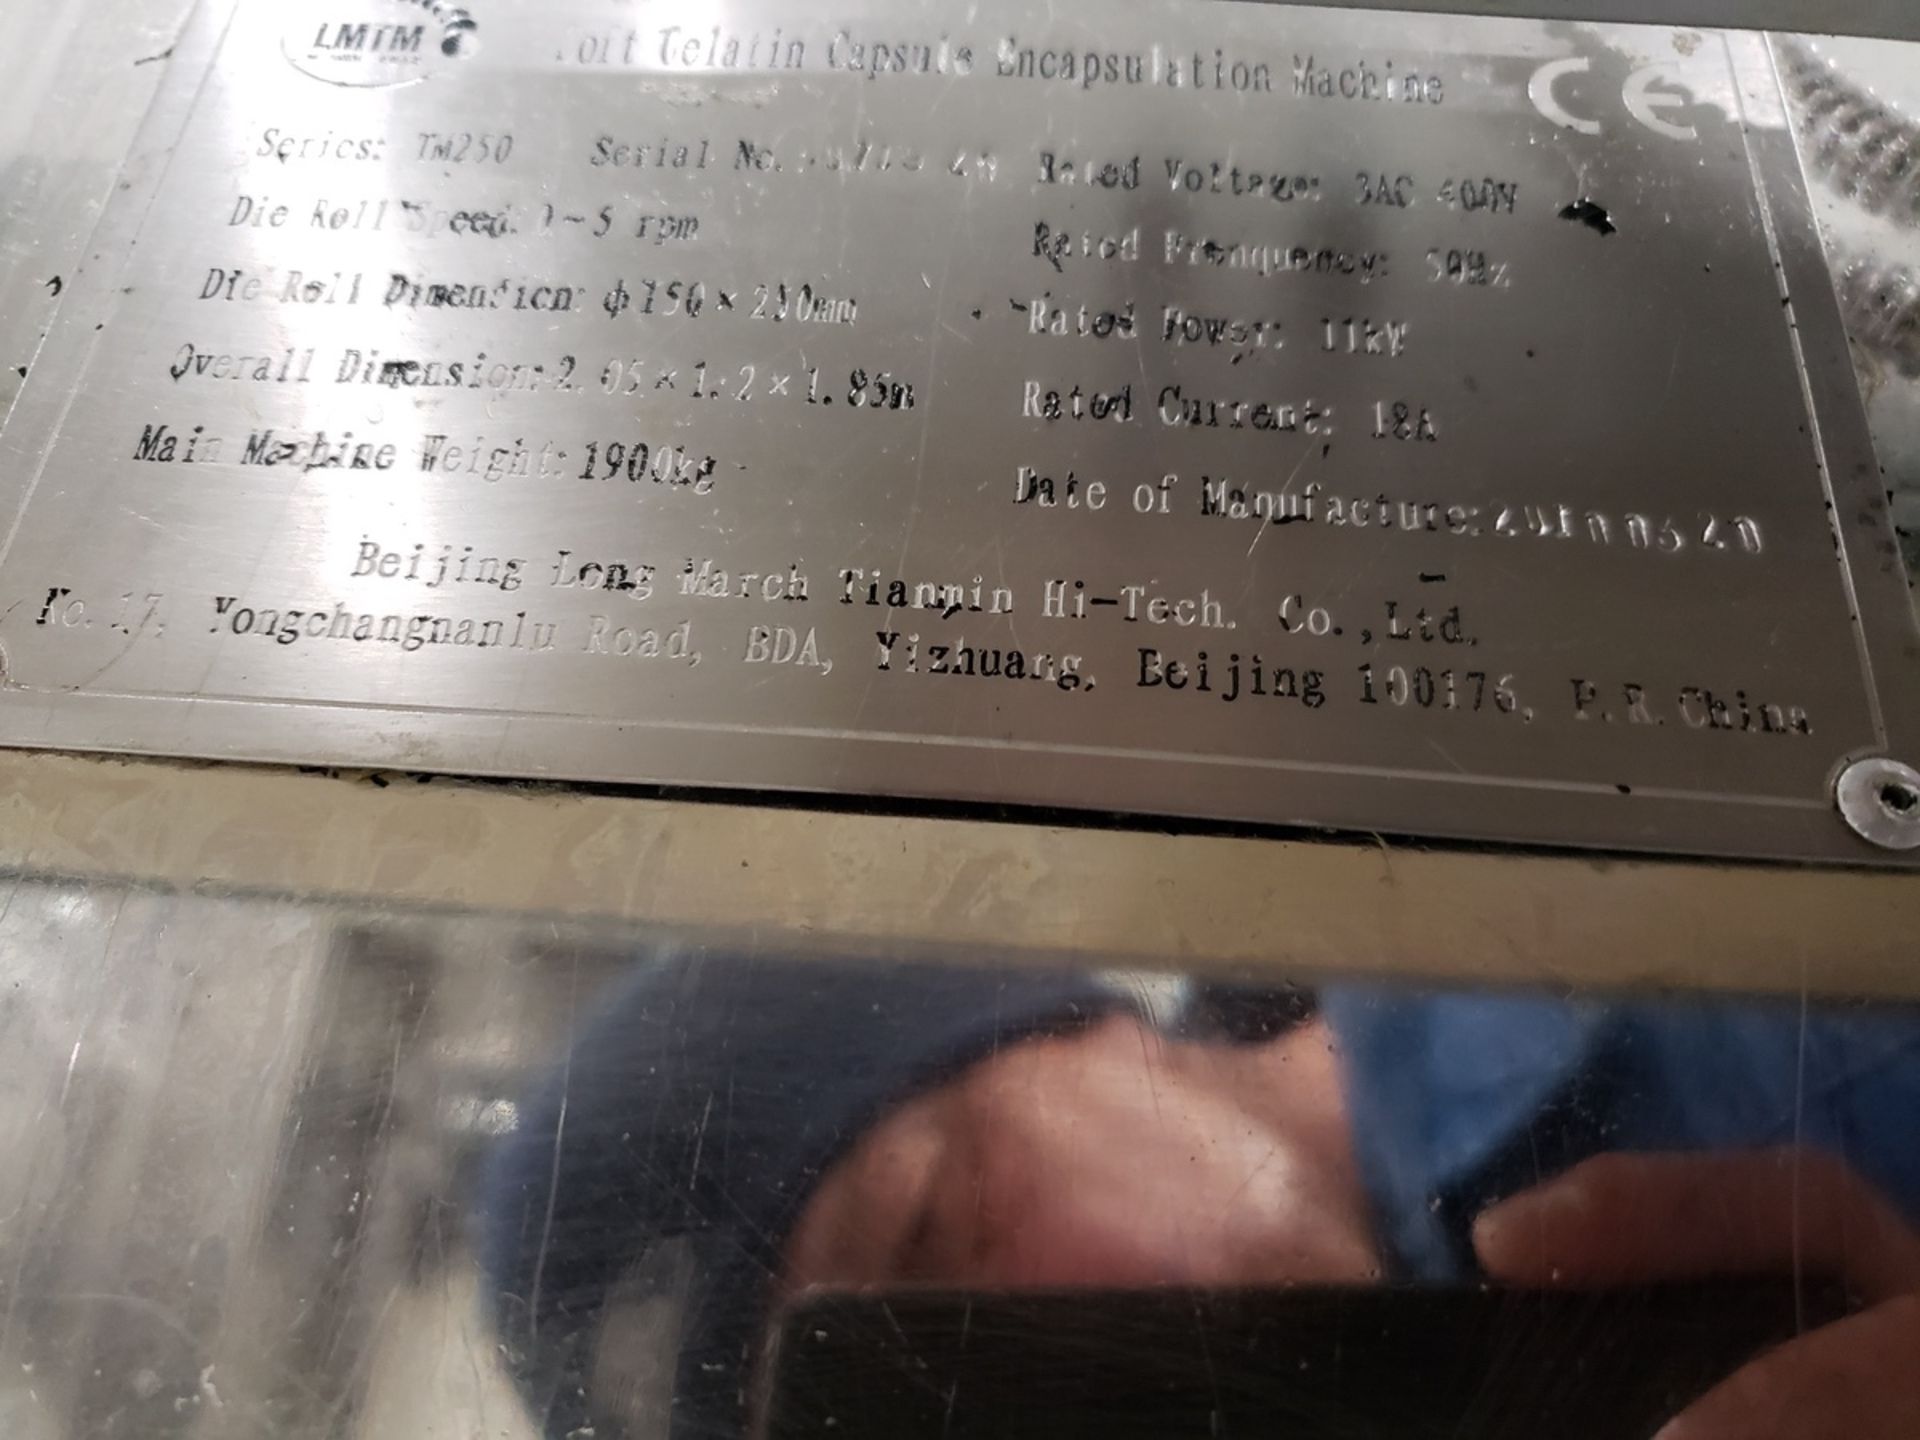 LMTM 10" Soft Gel Encapsulation Machine, Series TM250, S/N 071926 | Rig Fee $1000 - Image 3 of 8